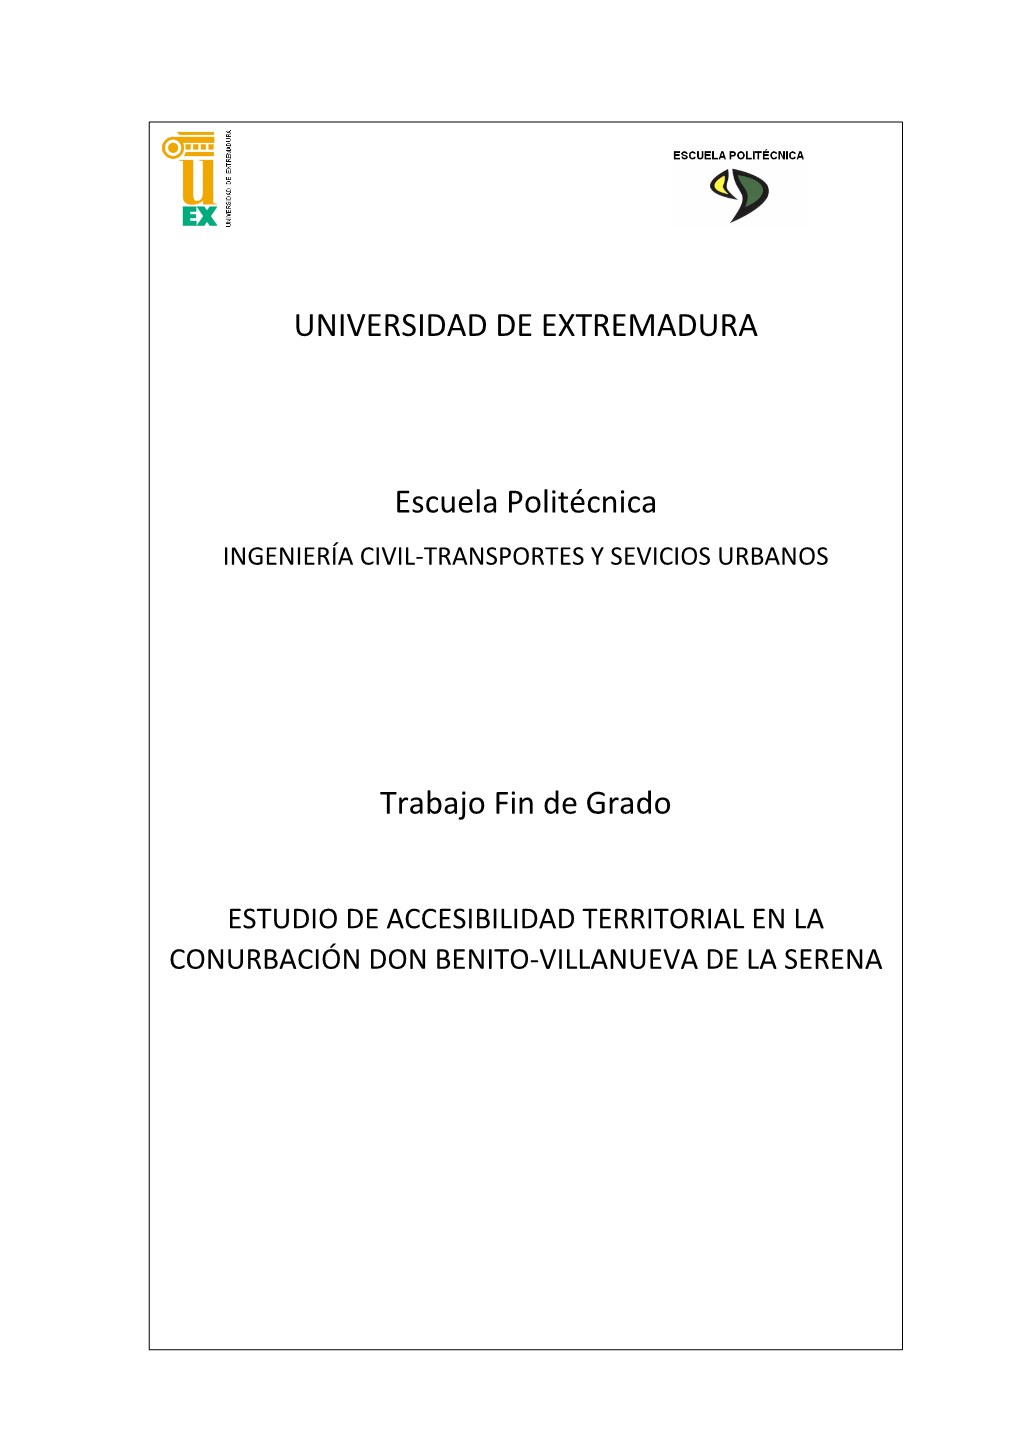 Estudio De Accesibilidad Territorial a La Conurbación Don Benito-Villanueva De La Serena